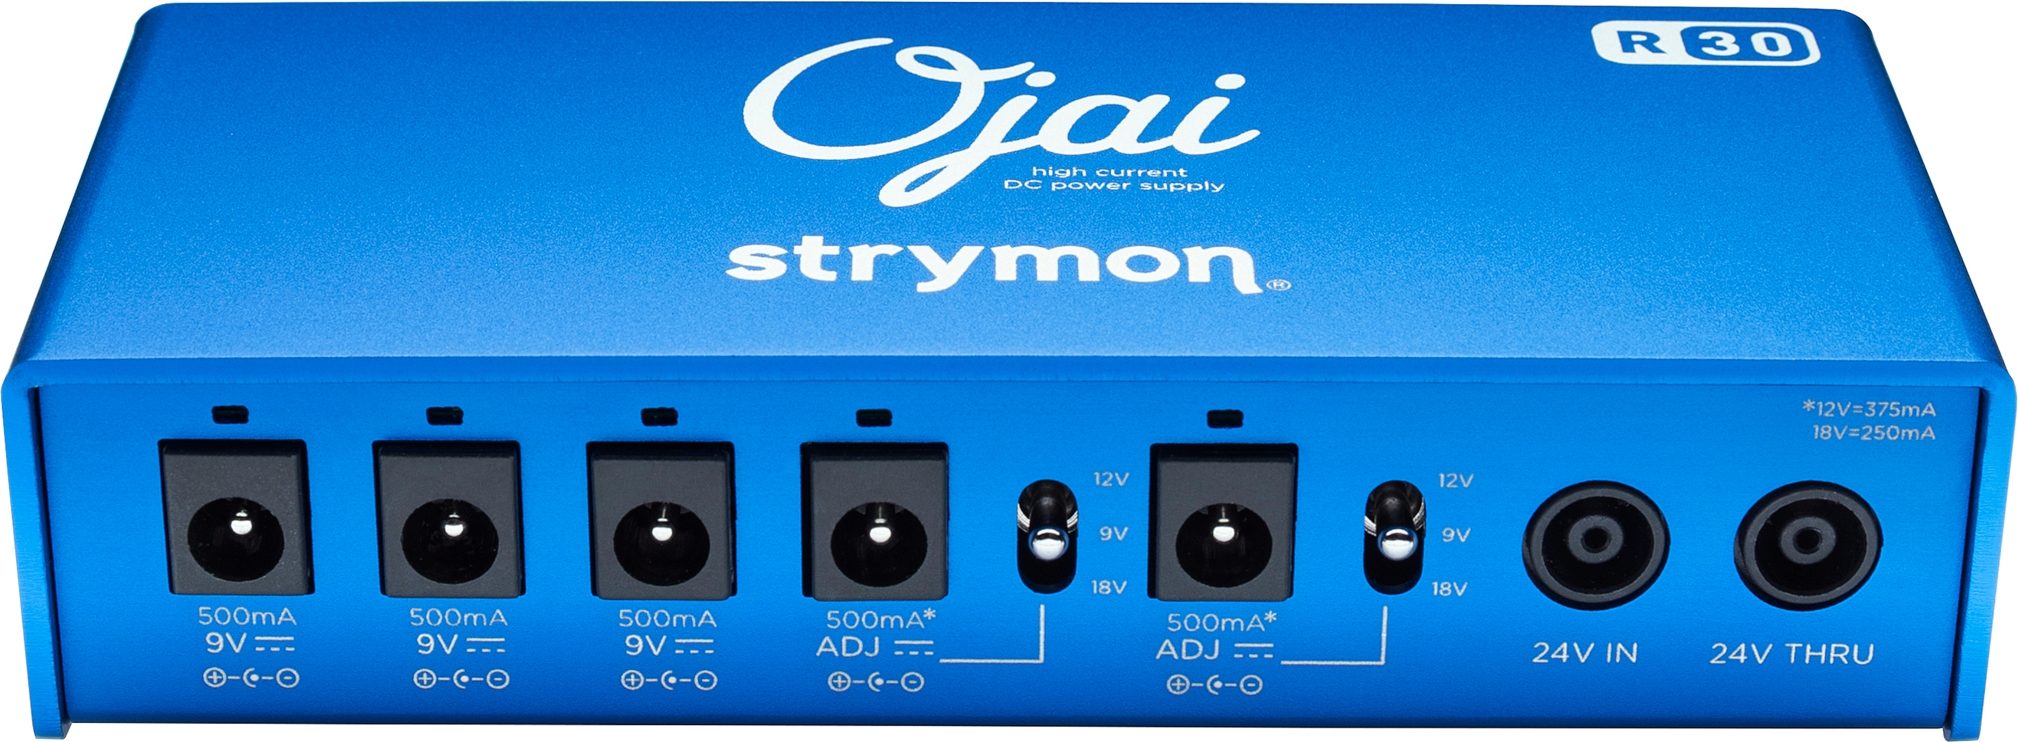 Strymon Ojai R30 Expansion Kit | zZounds